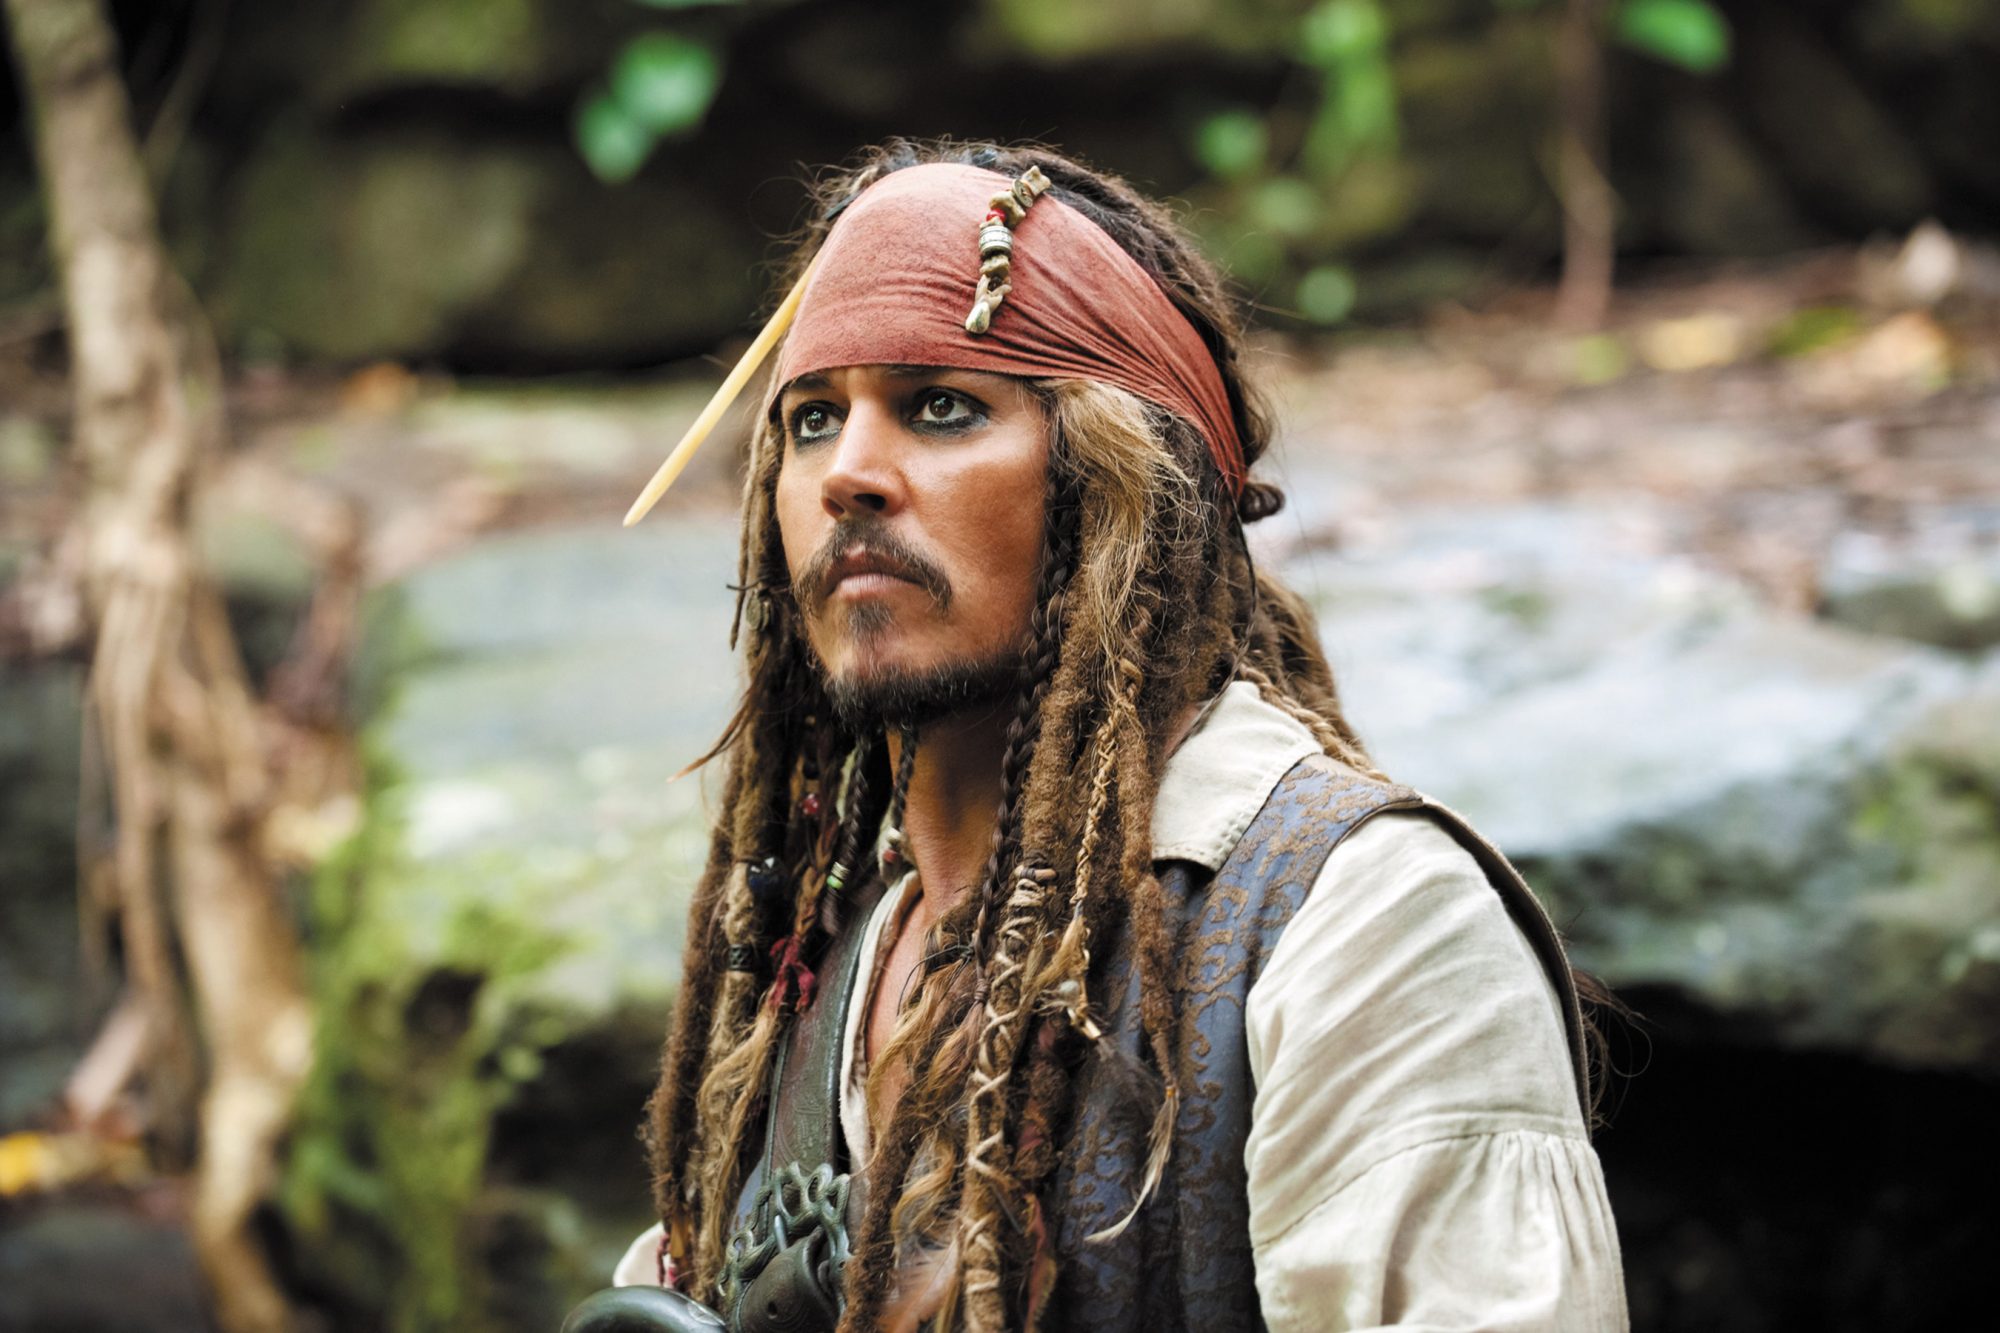 Advogados de Amber Heard descrevem Johnny Depp como um 'monstro